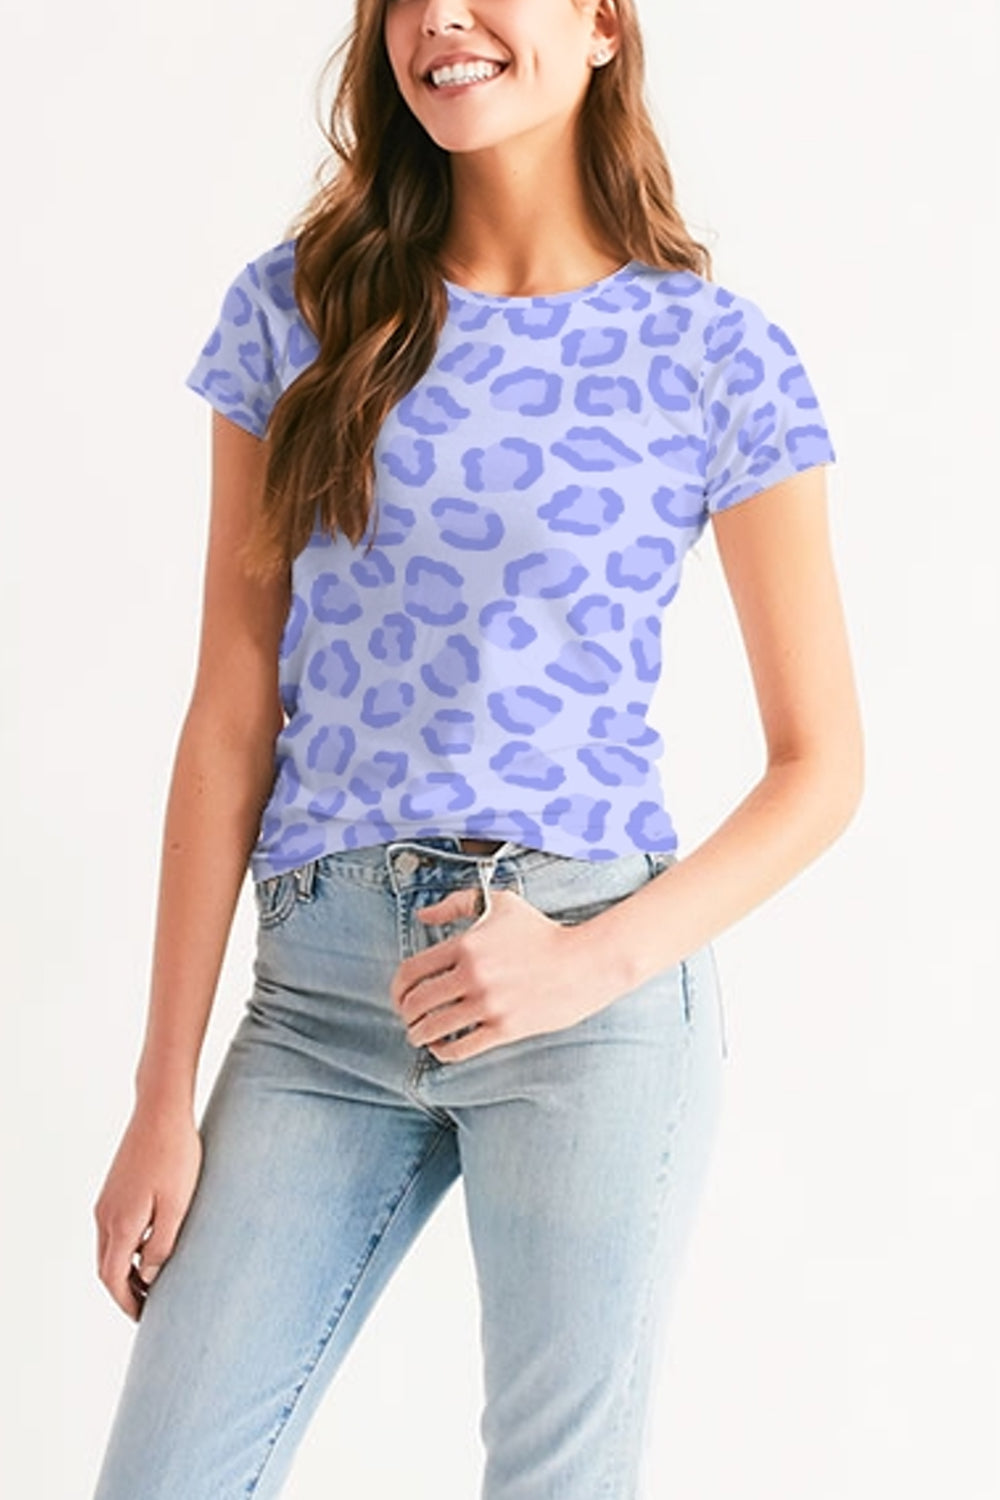 Sky Blue Leopard Print Women's Sublimated T-Shirt